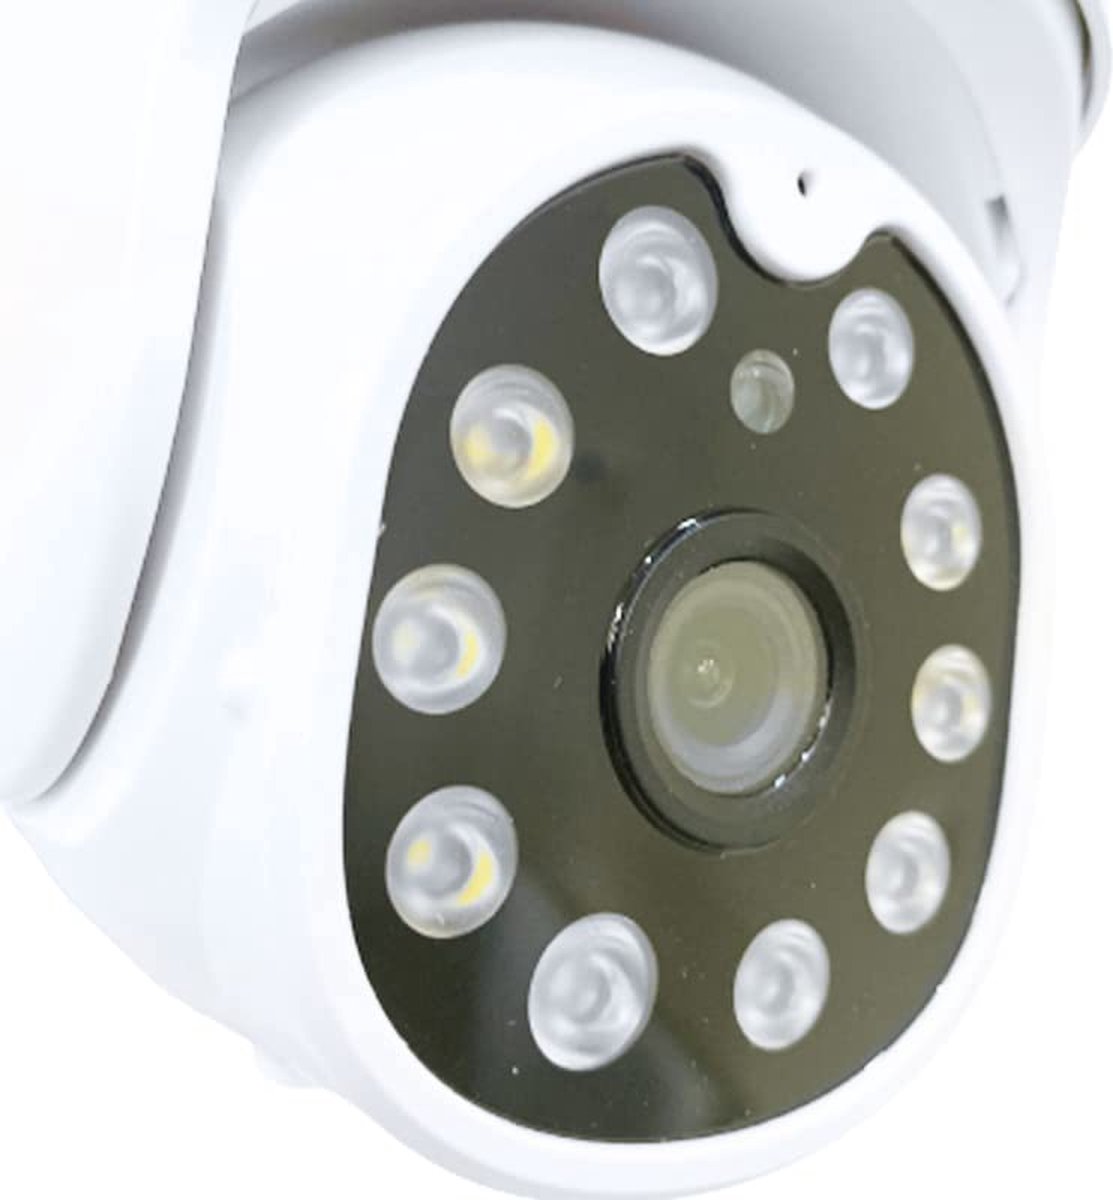 Beroli - Retoo Bewakingscamera voor binnen en buiten - Met automatische tracking - Nachtzichtcamera - Buitencamera - Wifi-draadloos - Nachtzicht - Waterdicht - Binnen.